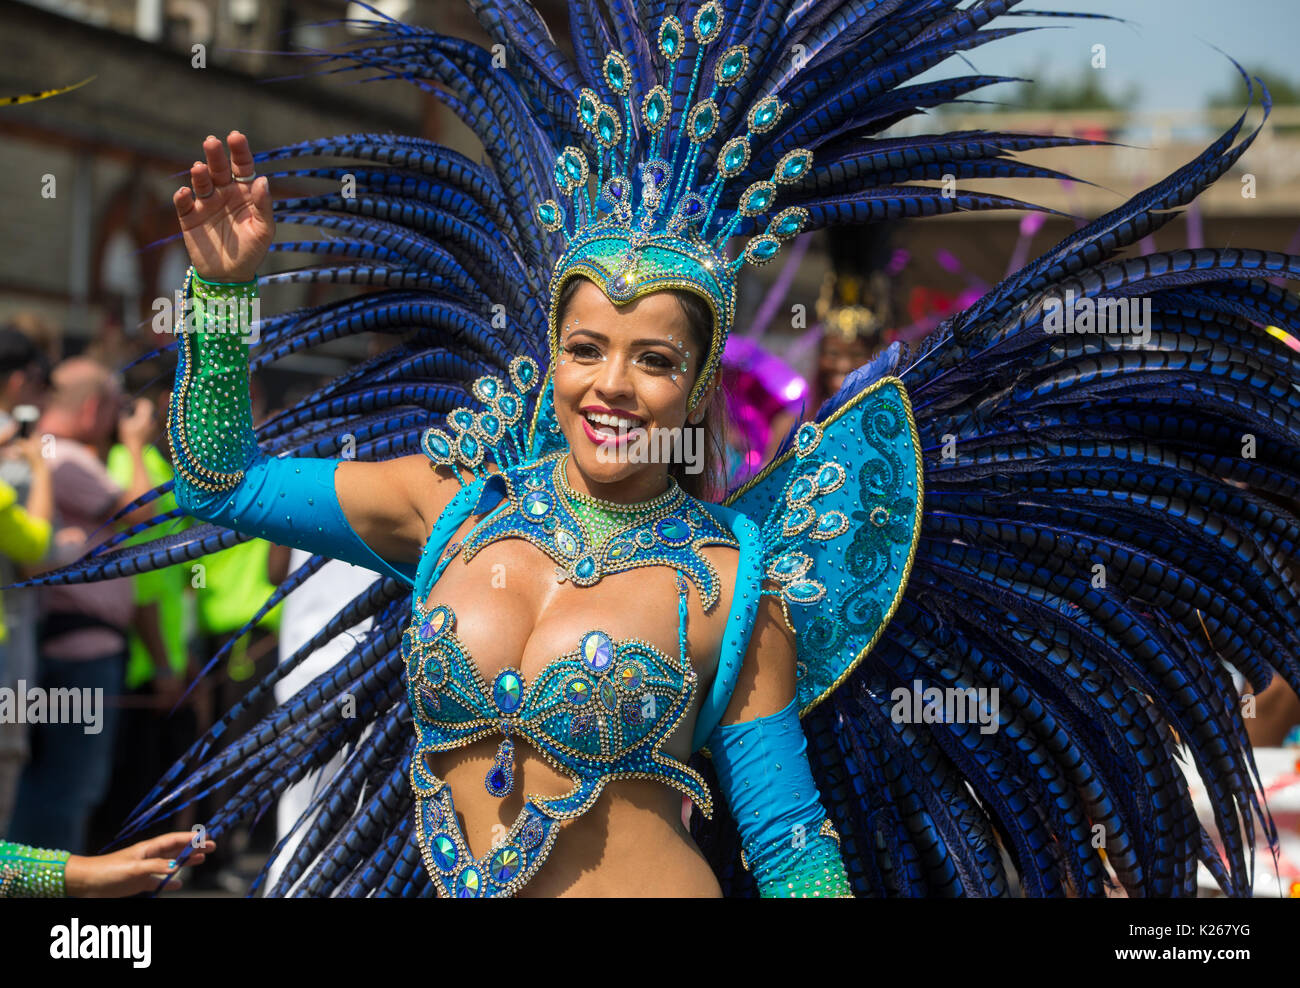 Les gens en costume au Notting Hill Carnival 2017. Jusqu'à 1 millions de personnes envahissent les rues de Notting Hill pour le plus grand carnaval de rue. Banque D'Images